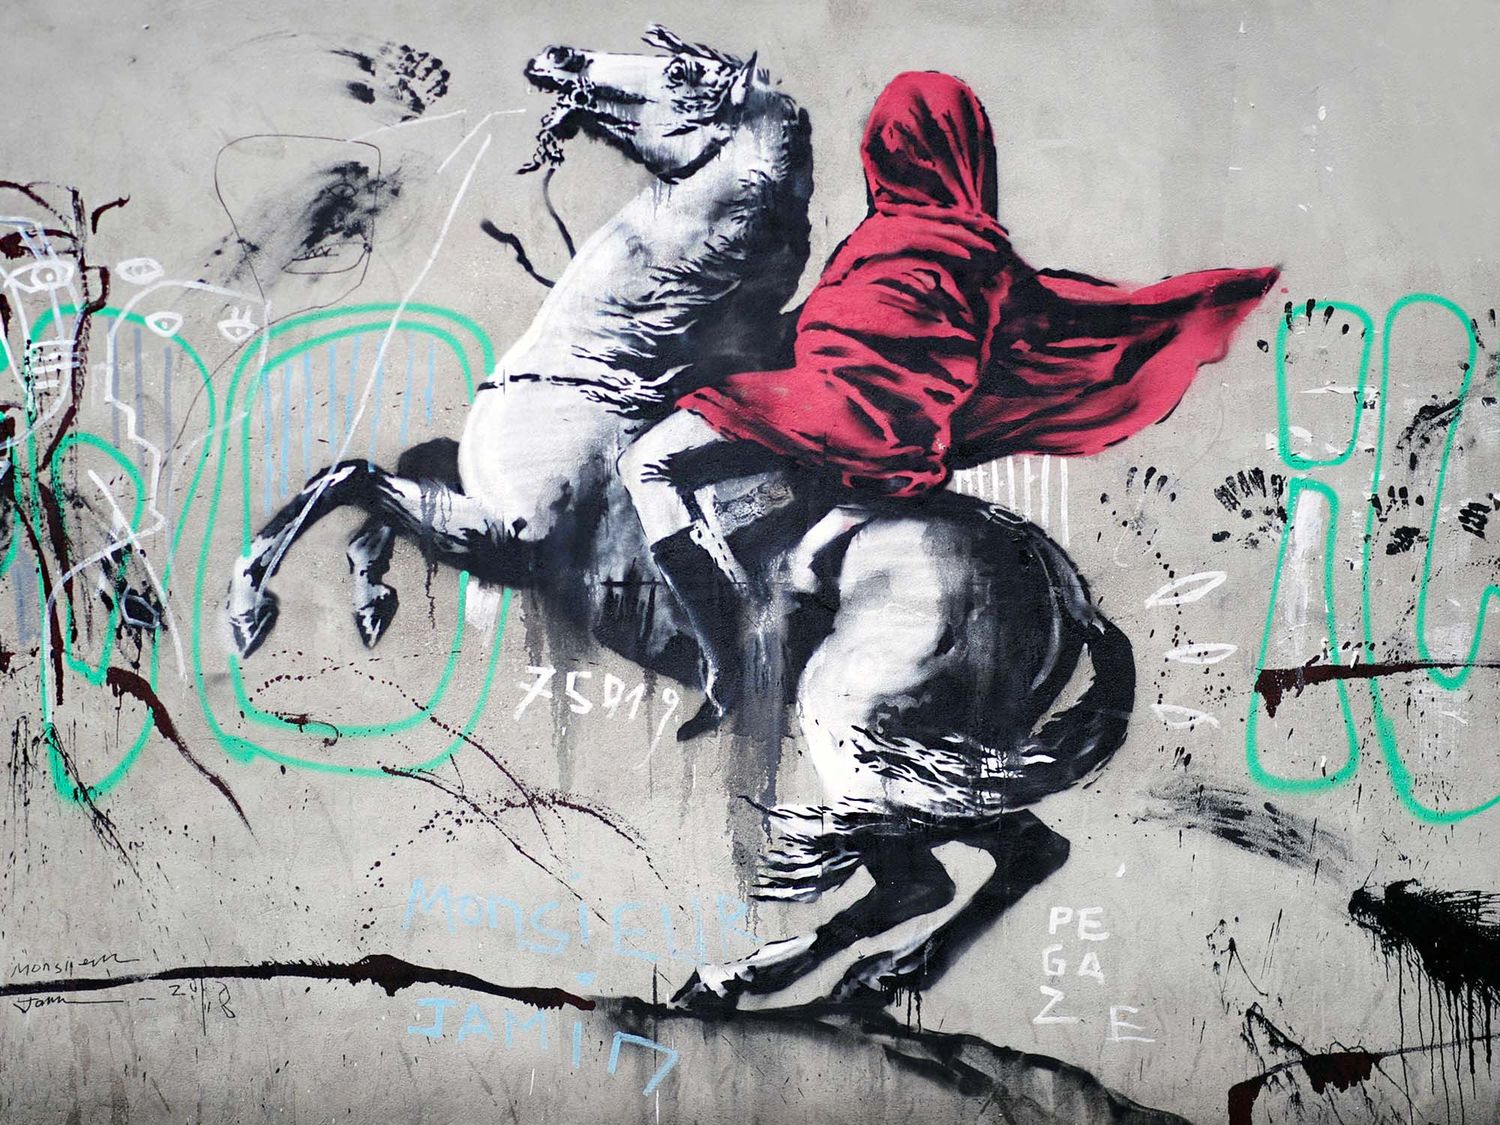 Bien qu’il n’en soit pas le précurseur, Banksy est sans aucun doute l’artiste pochoiriste le plus connu de la planète et celui qui aura permis à cette technique de se démocratiser (©Benoit Tessier).